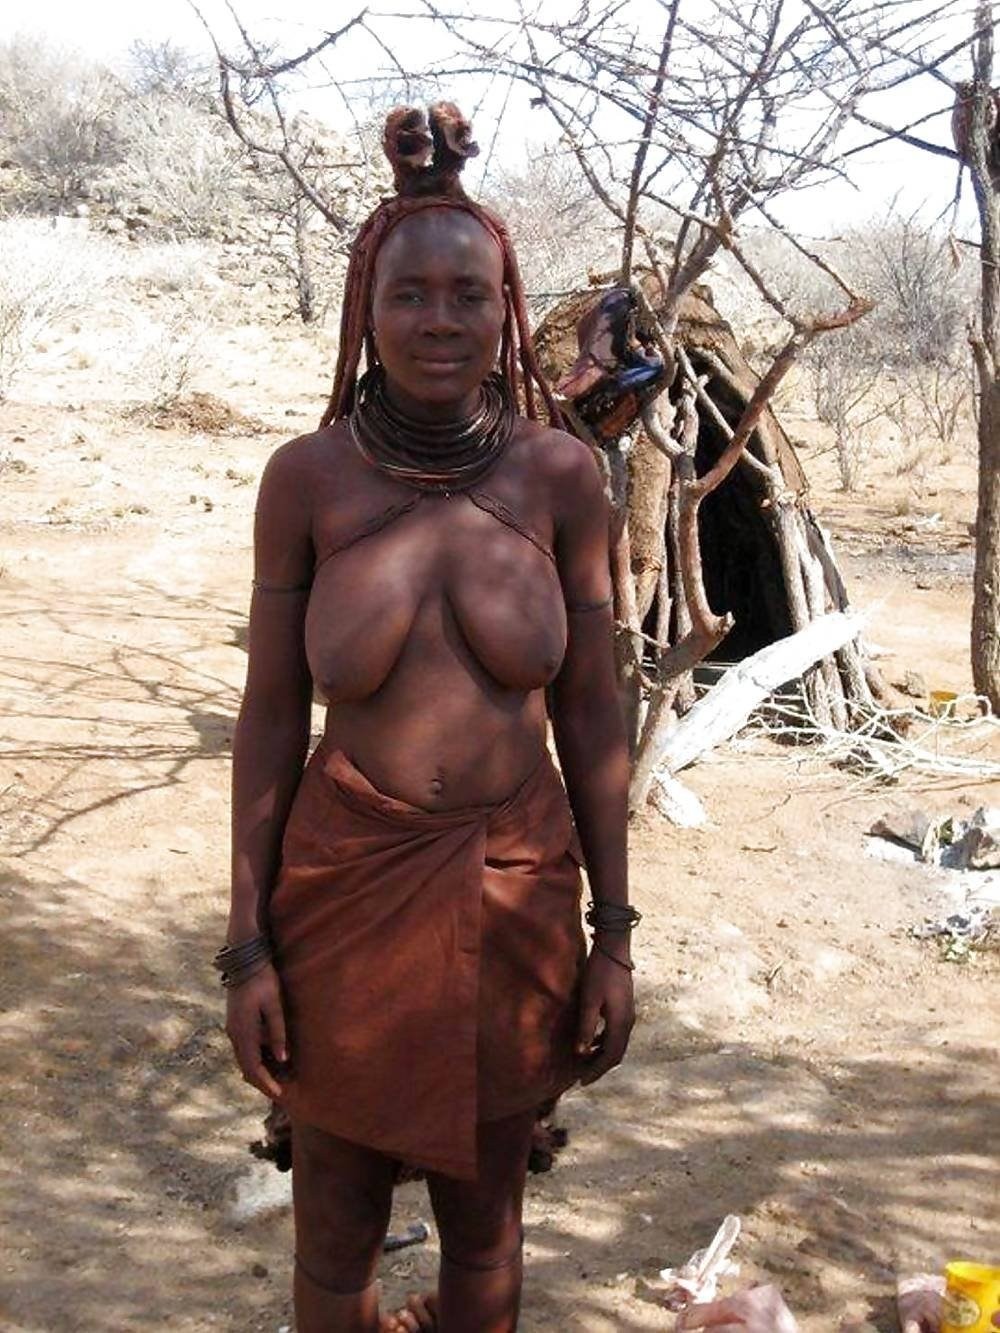 Писи дикие голые племена (80 фото) - порно и эротика автонагаз55.рф